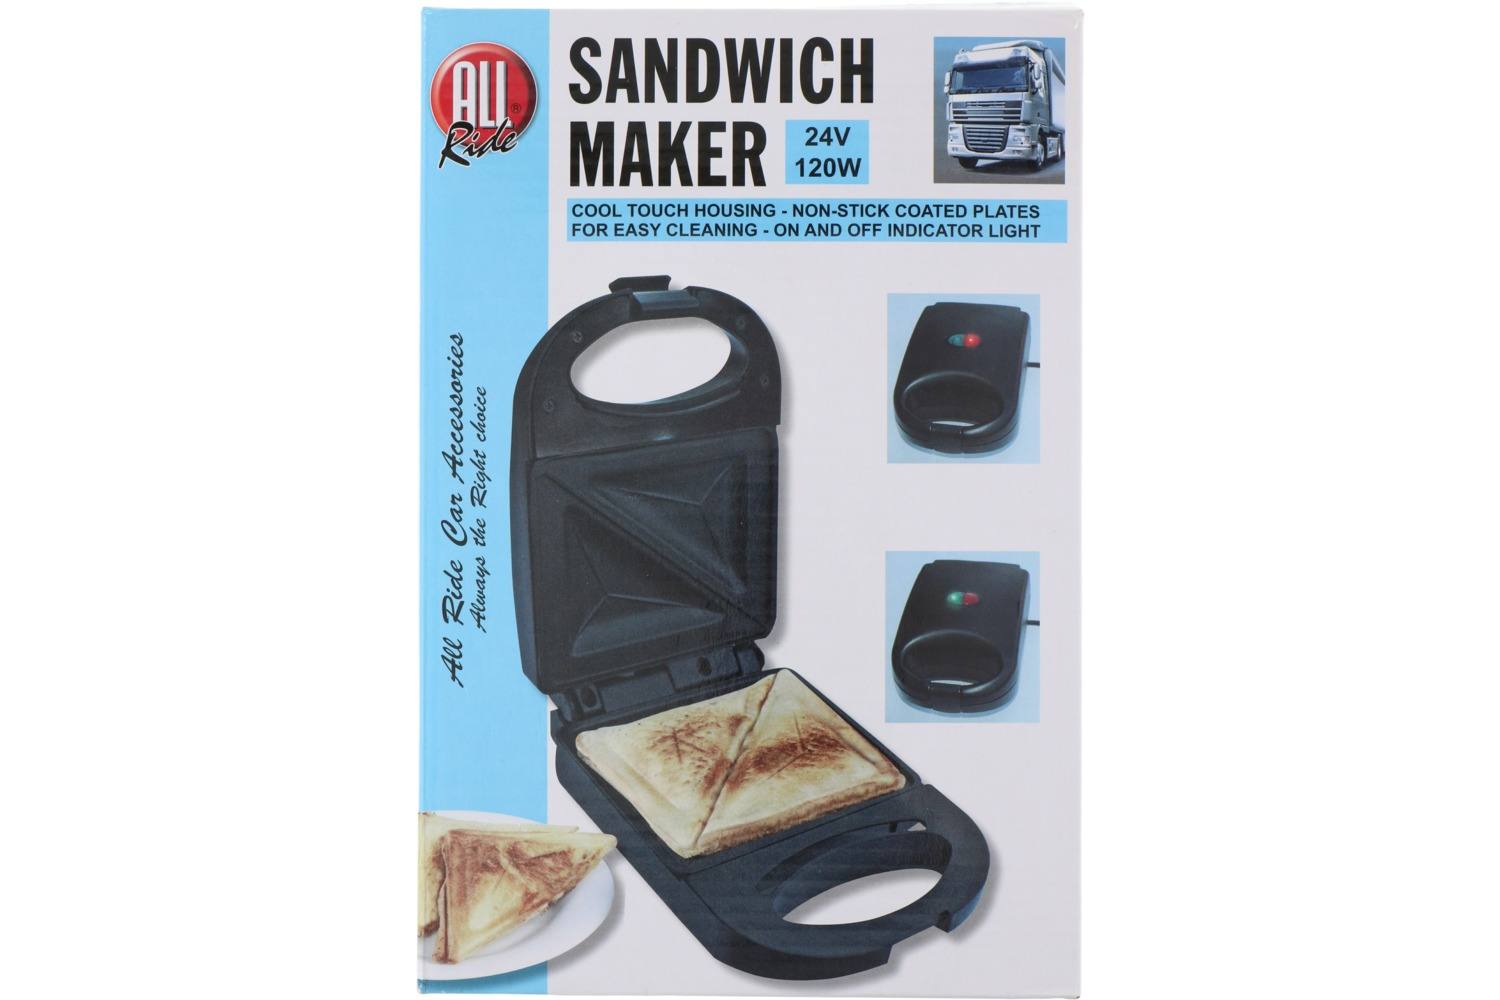 Sandwich maker, AllRide, 24V 2